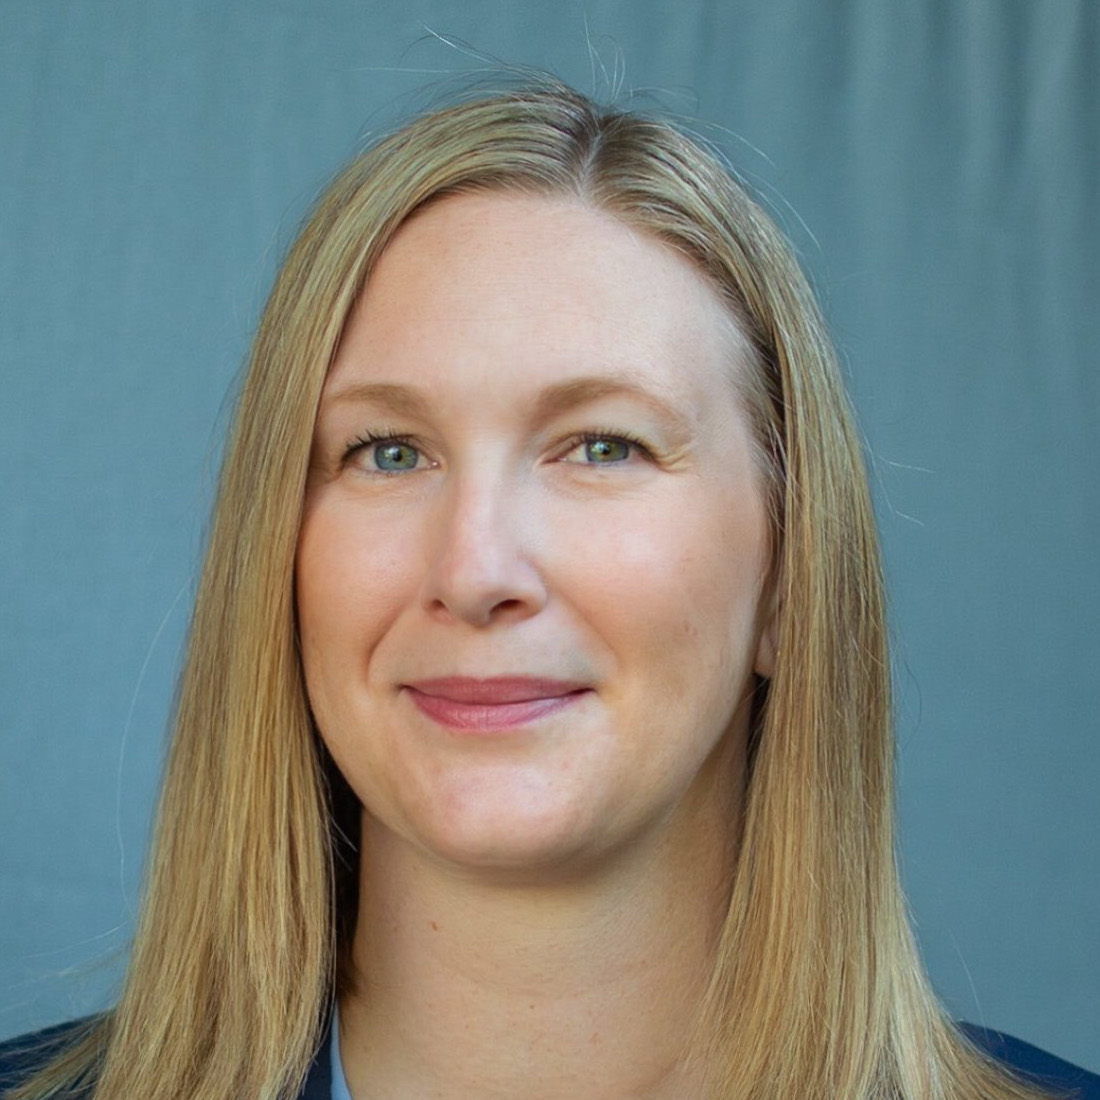 Dr. Kathryn Snyder, Director of Women’s Imaging